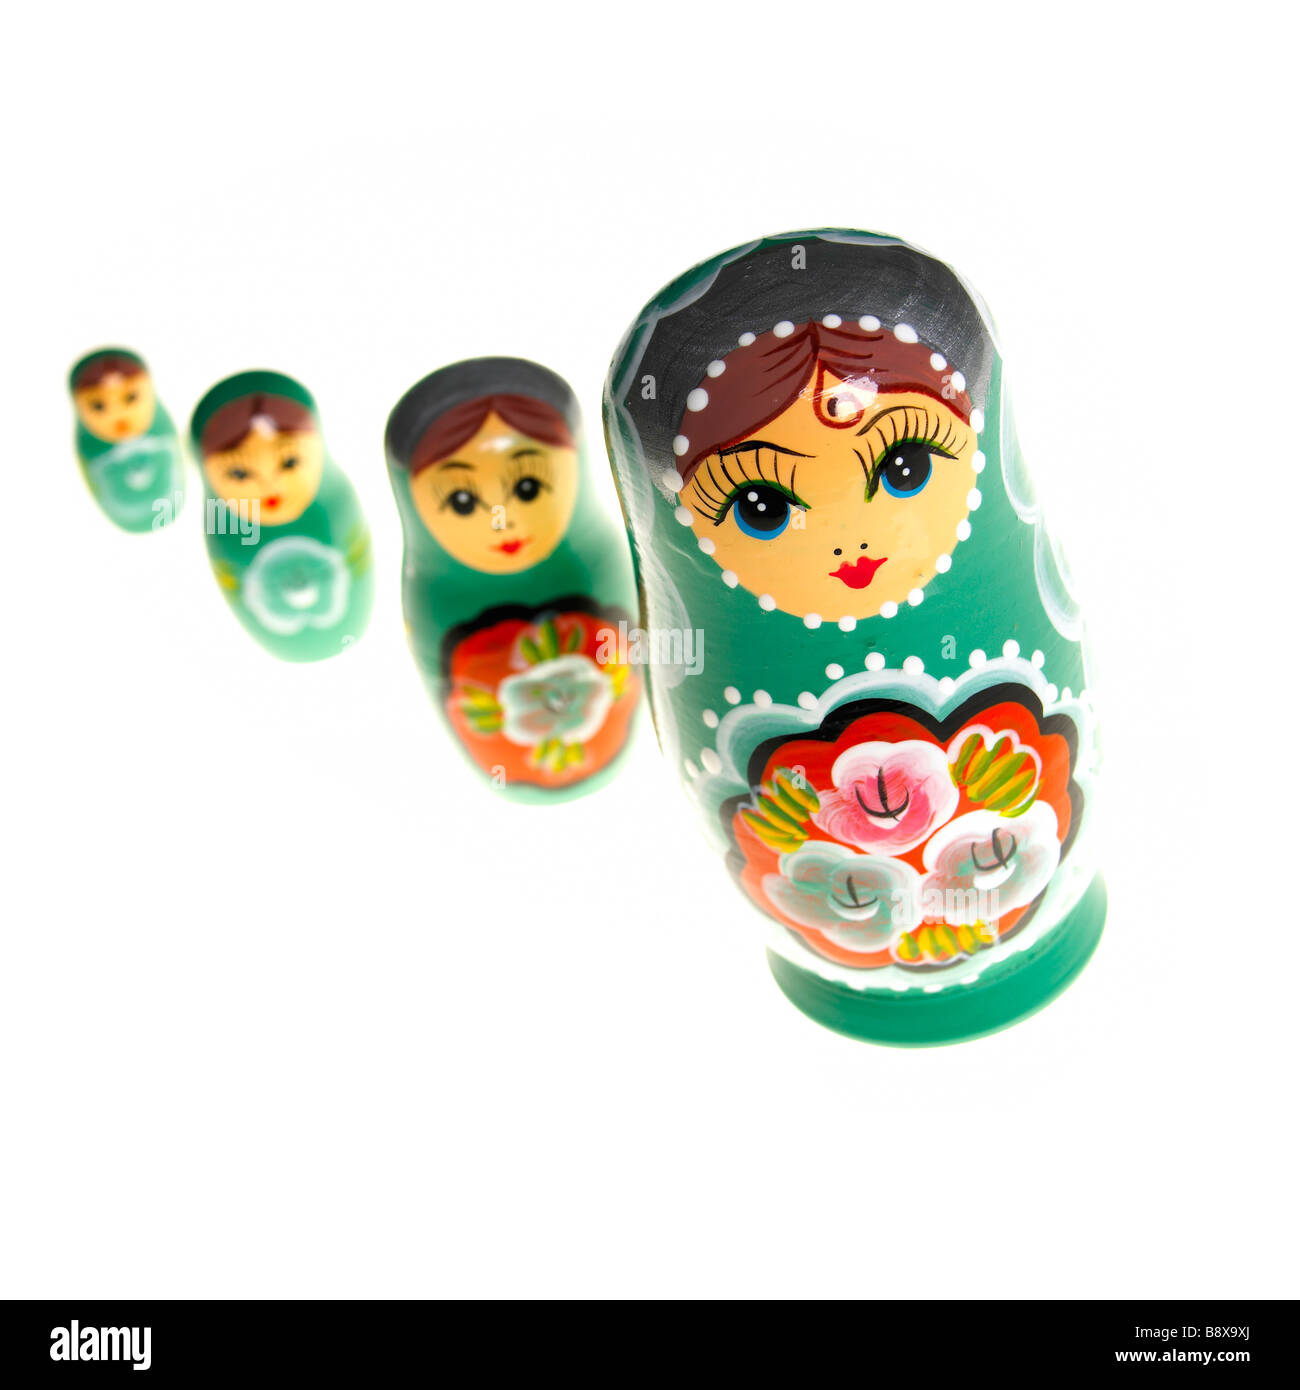 Bambole russe immagini e fotografie stock ad alta risoluzione - Alamy